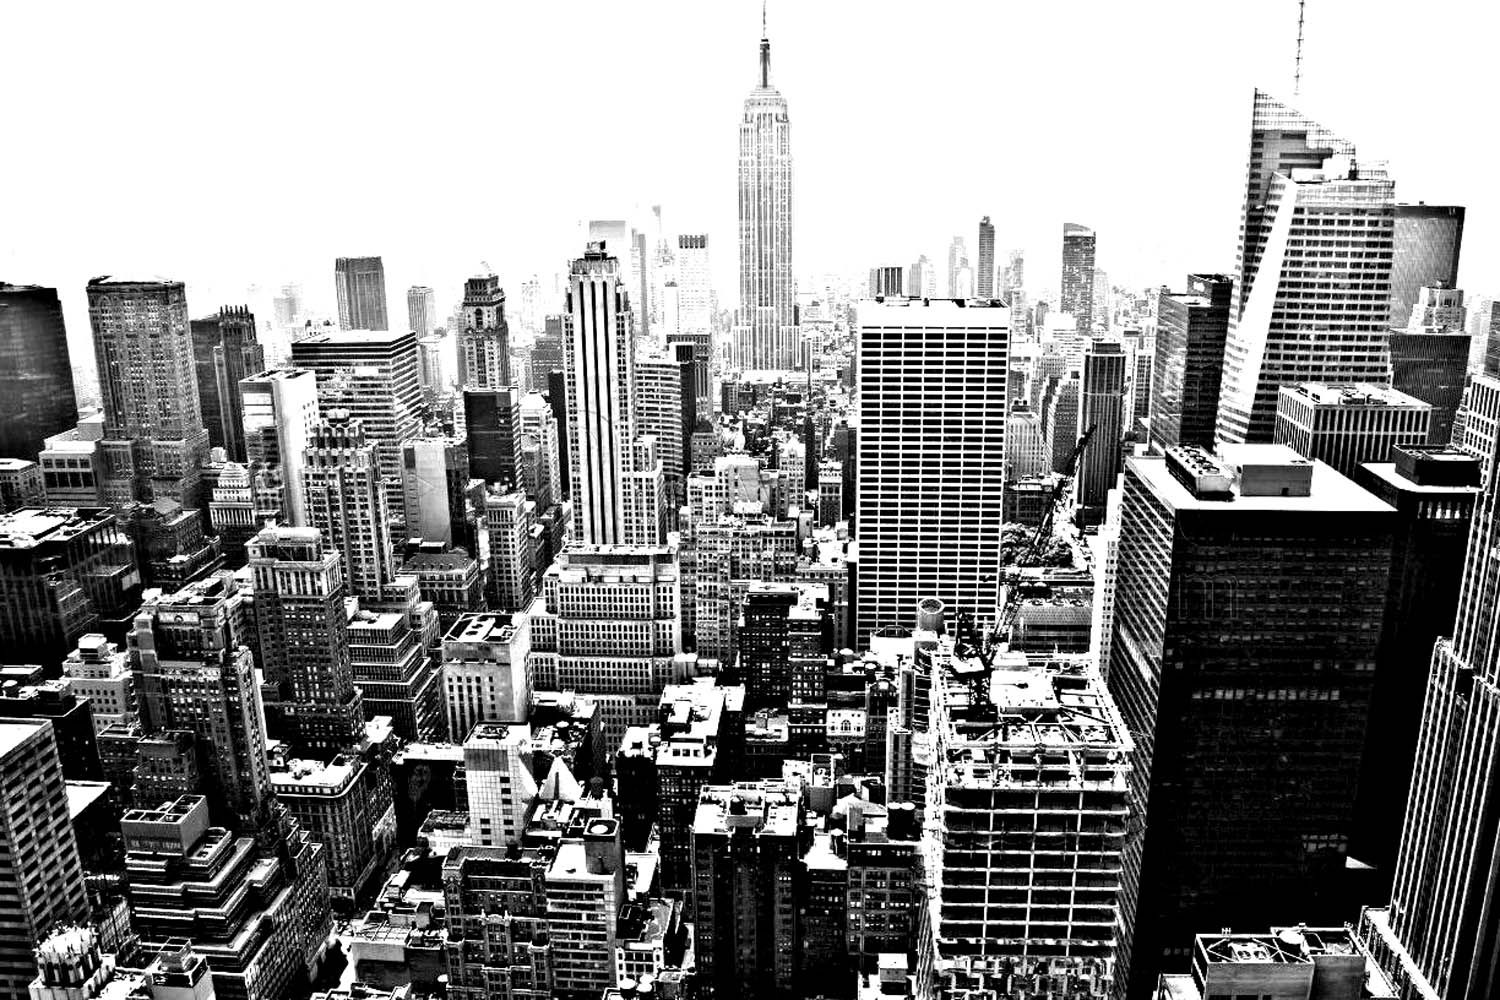 Malvorlage für Erwachsene von New York City Skyline, mit einer Menge Wolkenkratzer zum Ausmalen